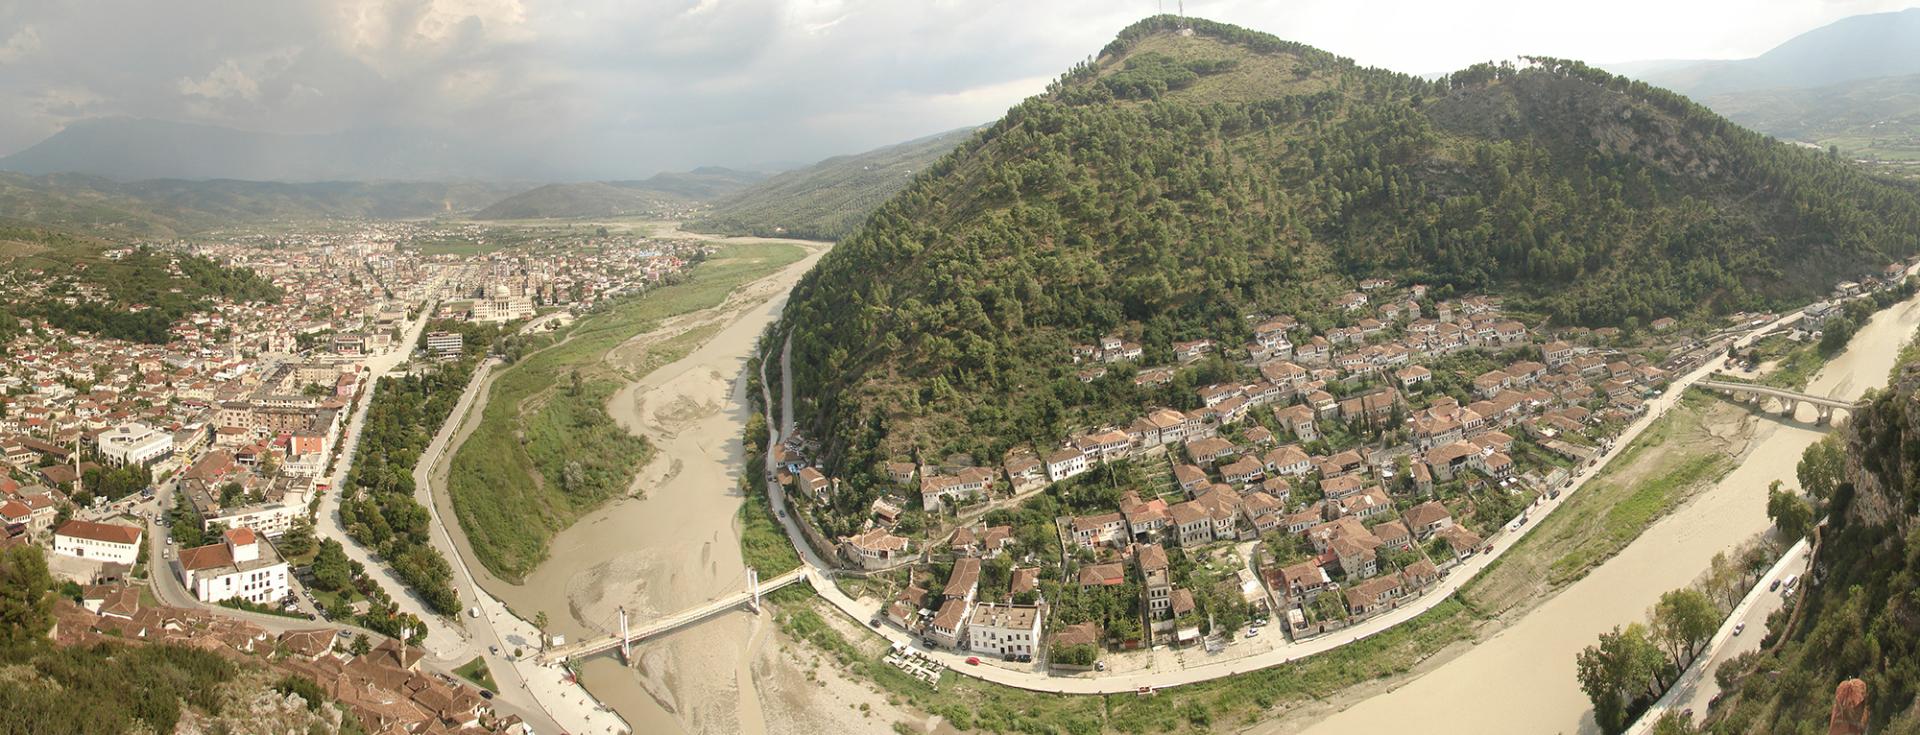 Берат- город тысячи окон в Албании